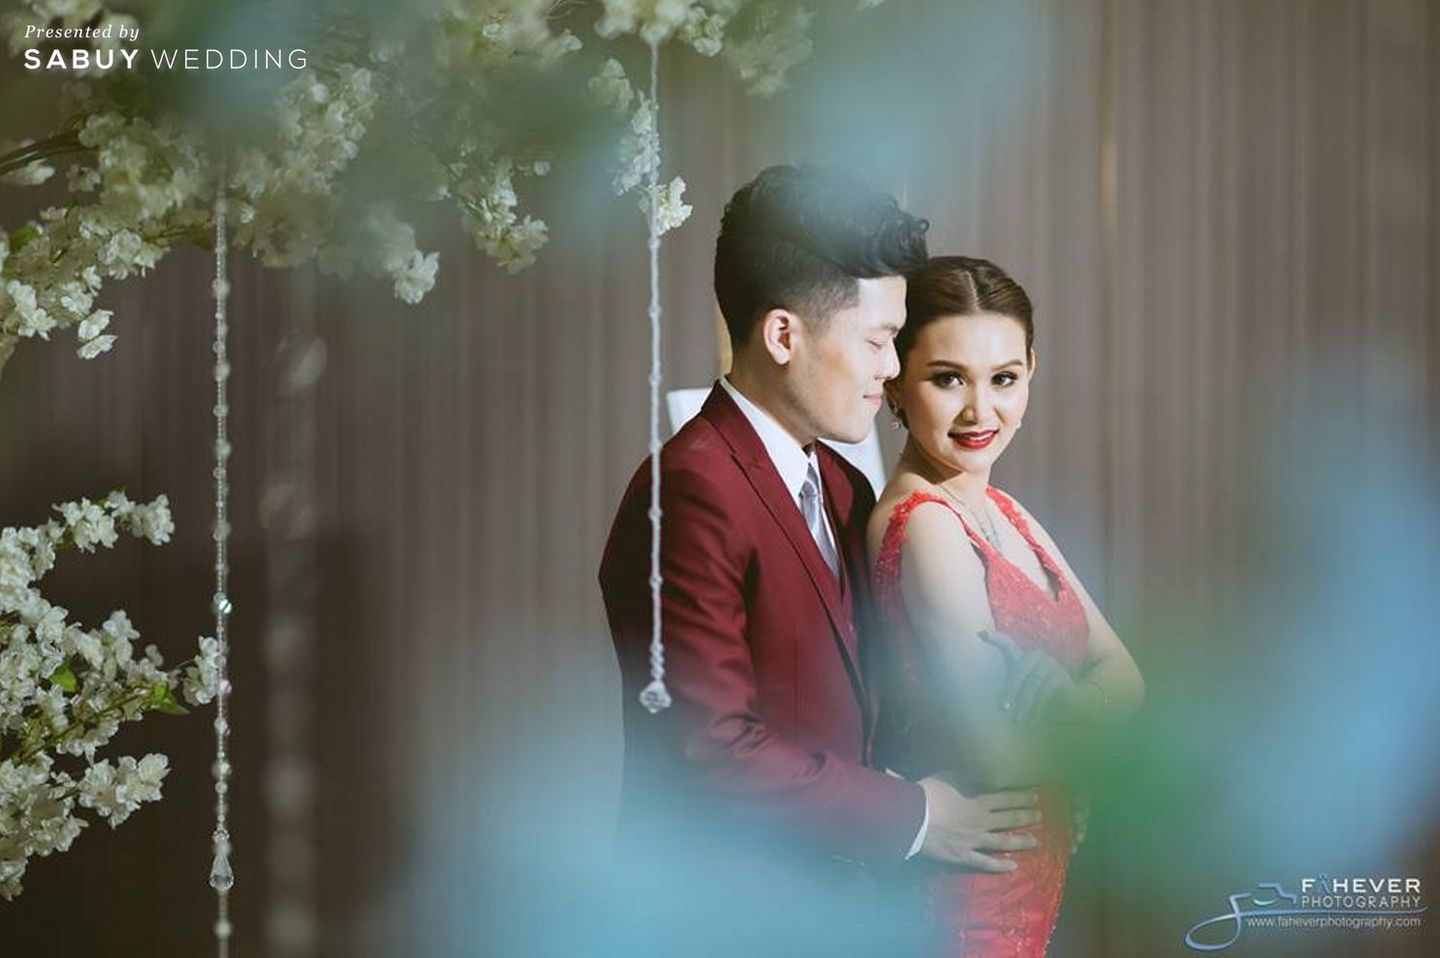 งานแต่งงาน,สถานที่แต่งงาน,สถานที่จัดงานแต่งงาน,The HALLS Bangkok,Fahever Photography,เจ้าบ่าว,เจ้าสาว ปาร์ตี้งานแต่งชุดแดงสุดแซ่บ แสงสีจัดเต็ม by Fahever Photography